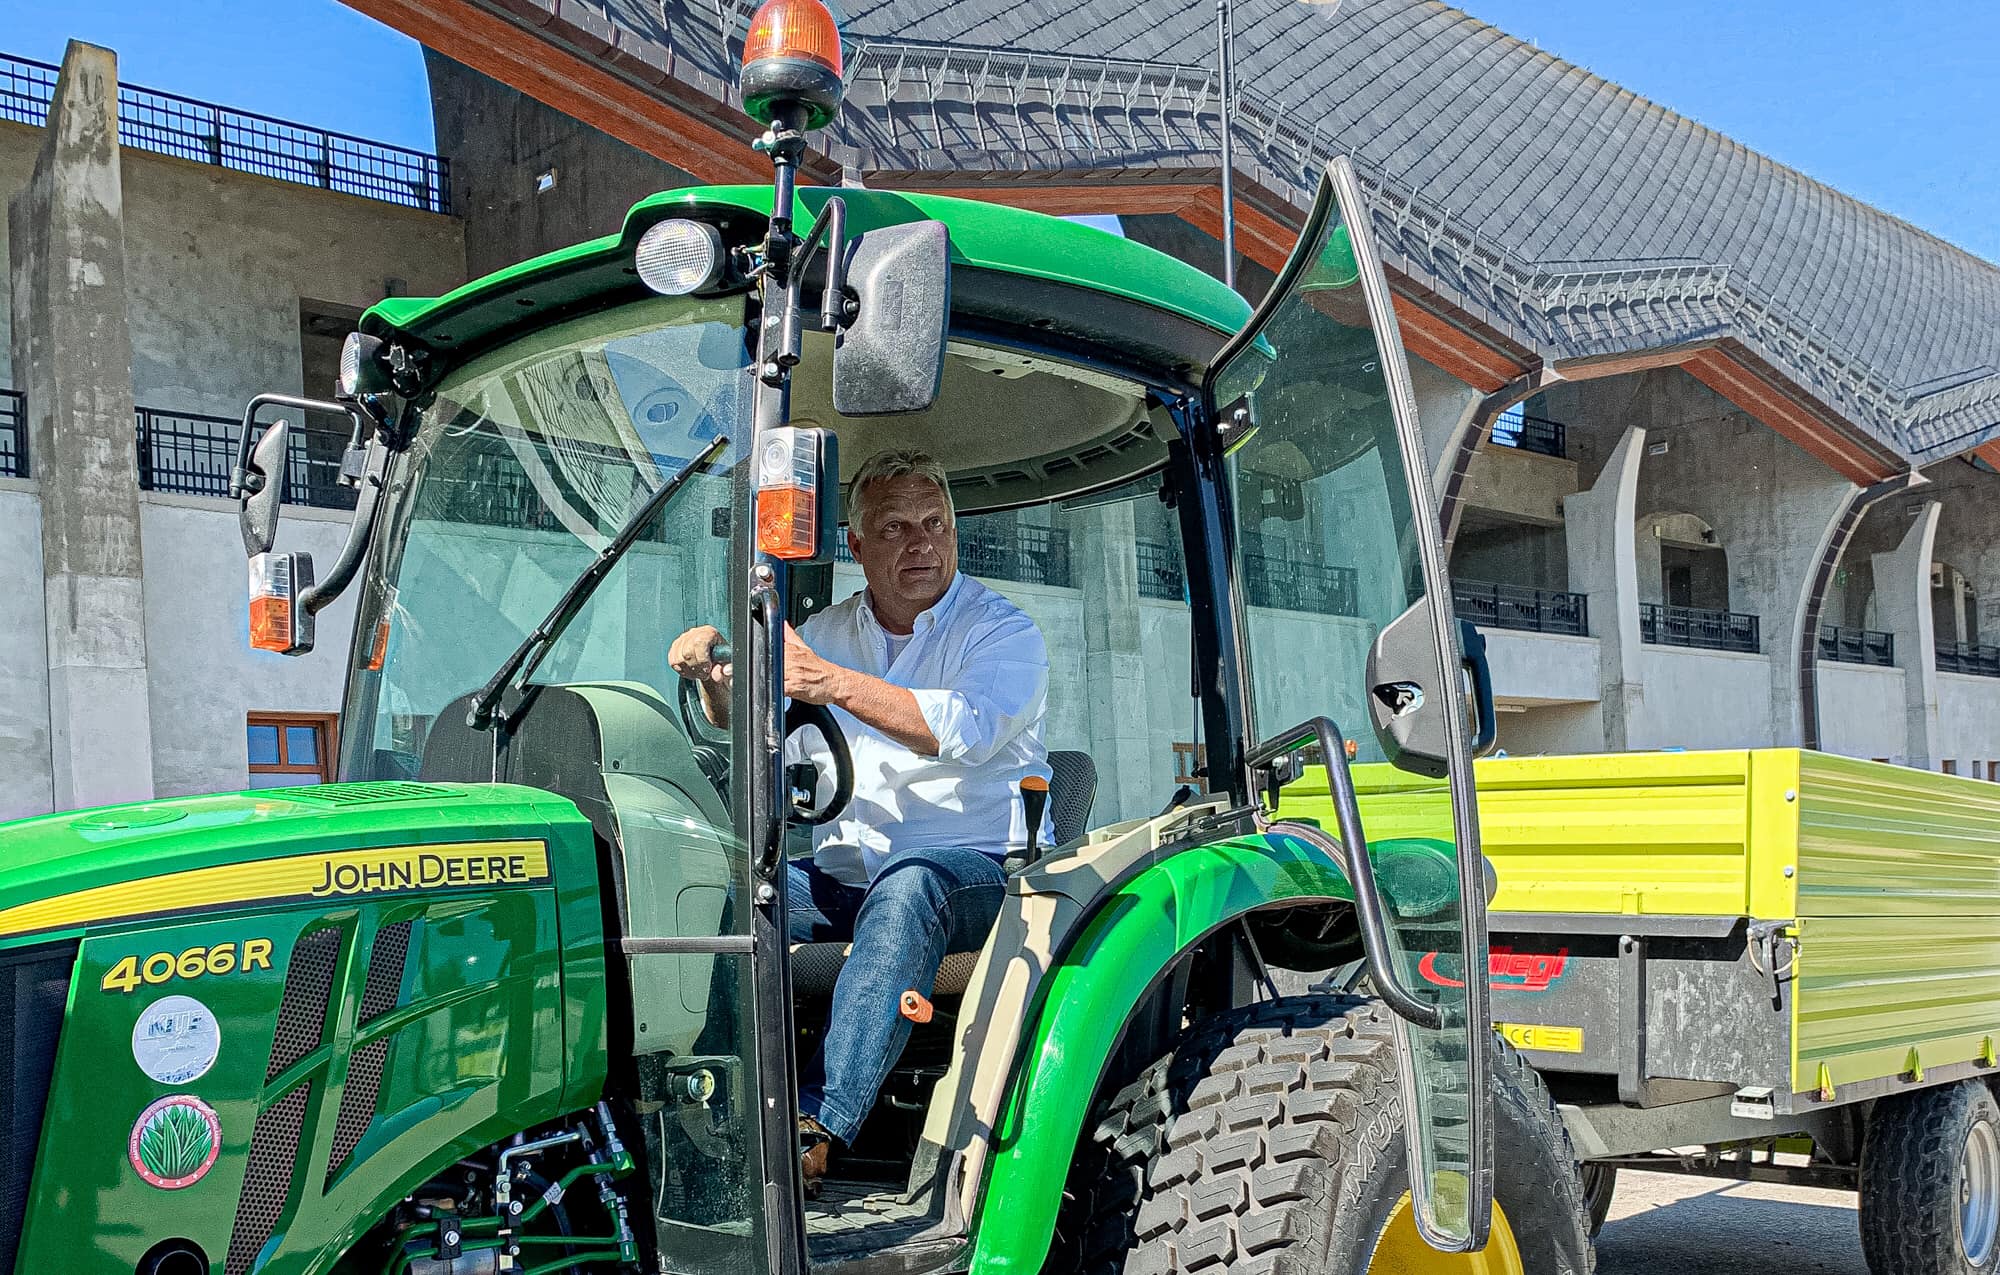 Orbán Viktor, Magyarország miniszterelnöke traktort vezet a háza mellé építtetett felcsúti stadion előtt 2020 szeptemberén.